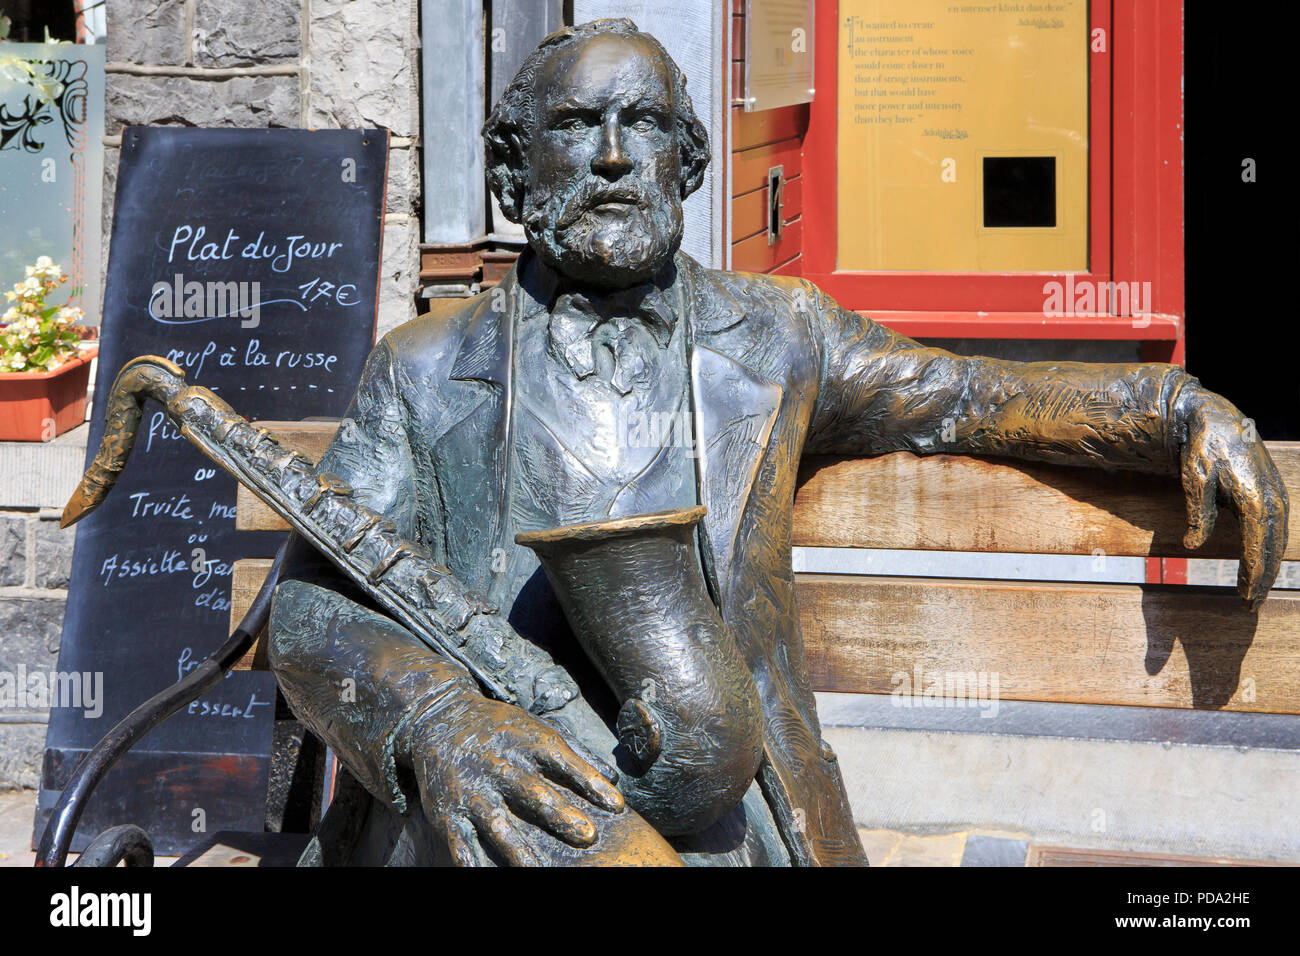 Statue von Antoine-Joseph 'Adolphe Sax' (1814-1894), belgischer Erfinder  und Musiker, der das Saxophon erfunden, in Dinant, Belgien Stockfotografie  - Alamy